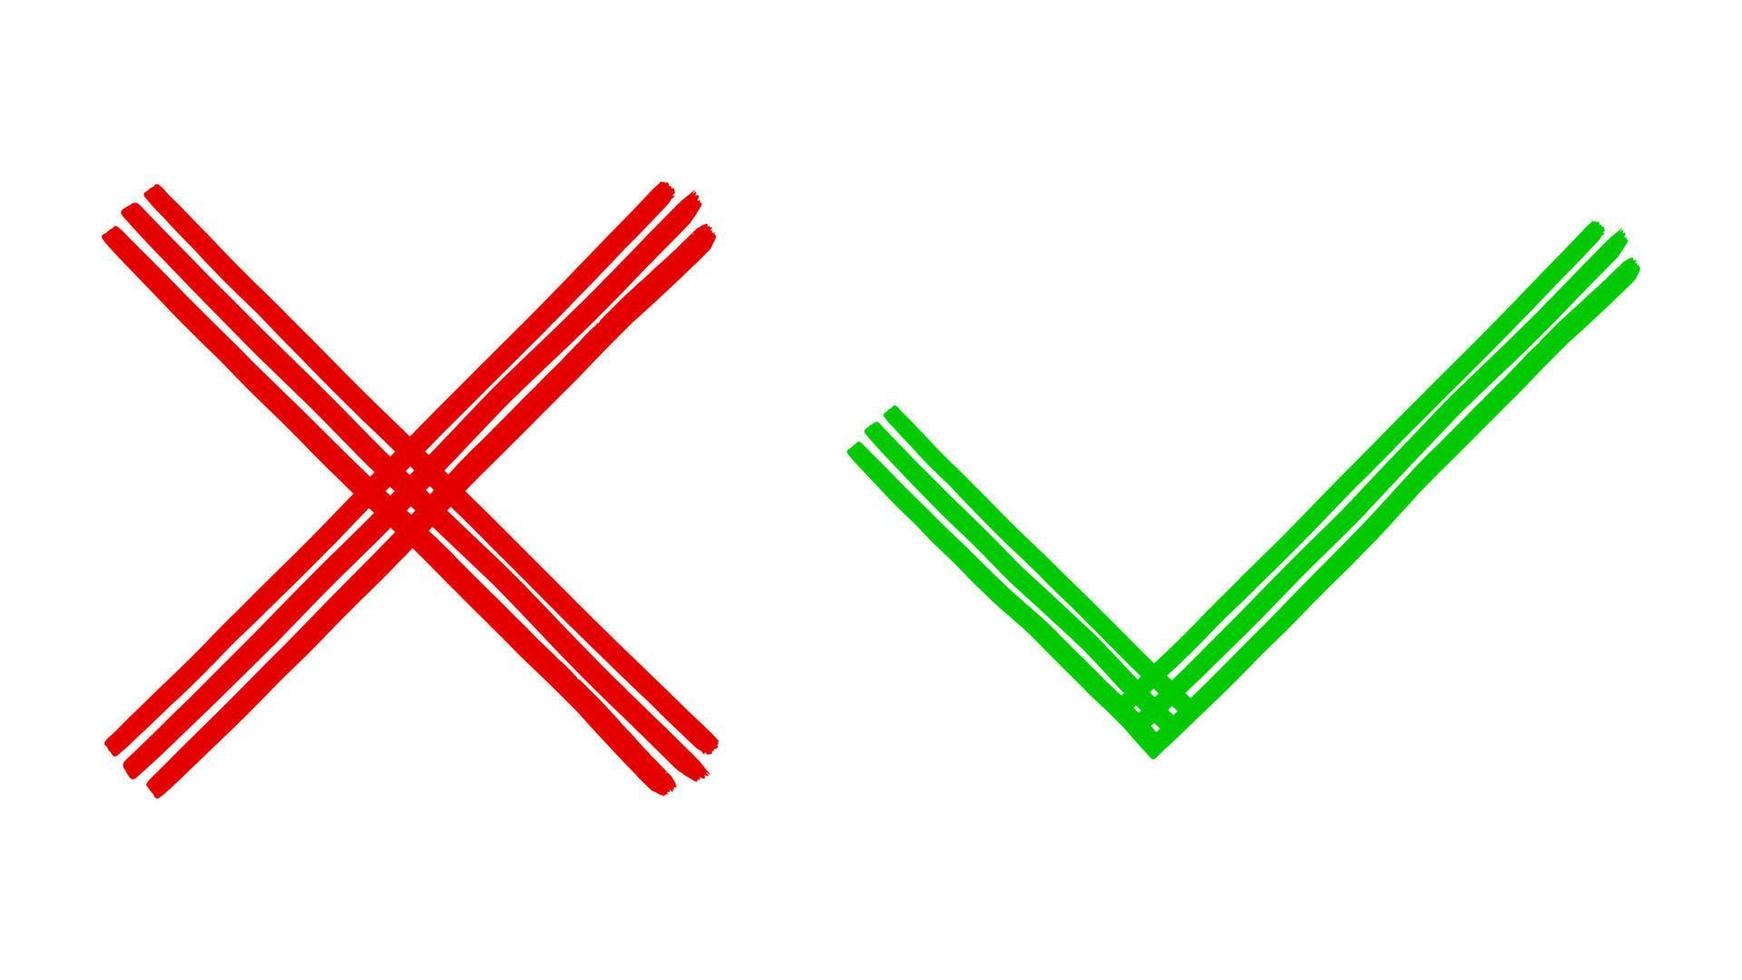 dos sucios grunge dibujados a mano con trazos de pincel cruzan x y marcan las marcas de verificación ok vector